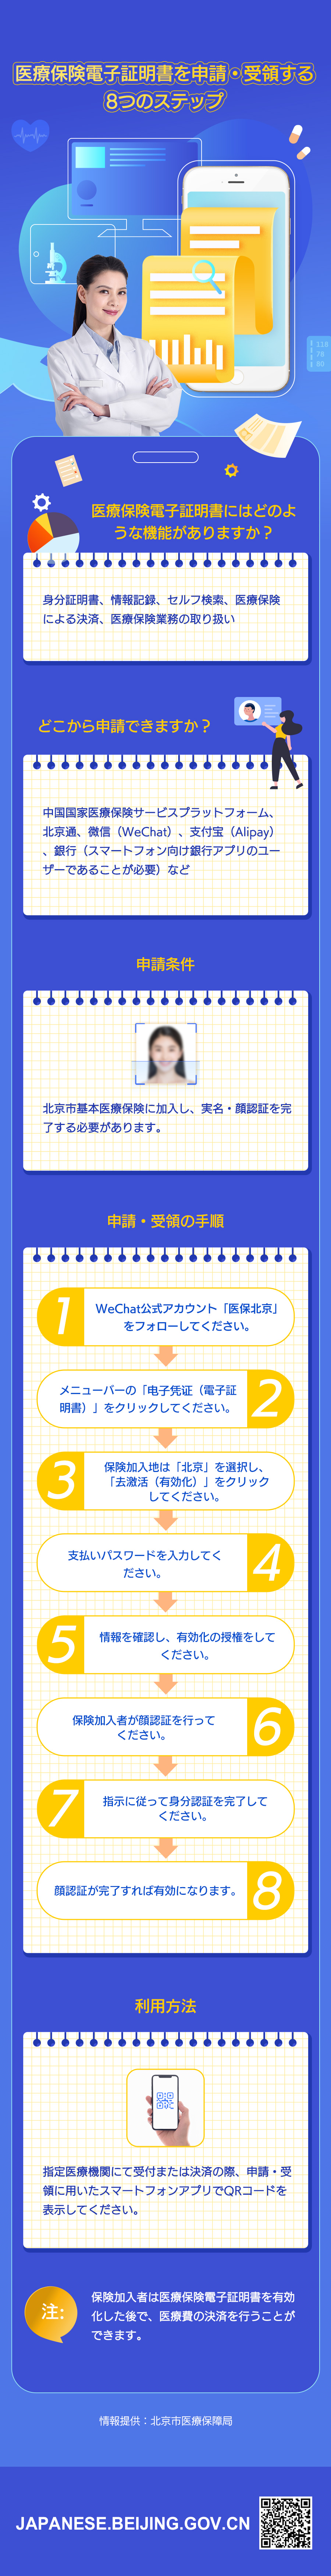 8个步骤申领医保电子凭证-日语.jpg